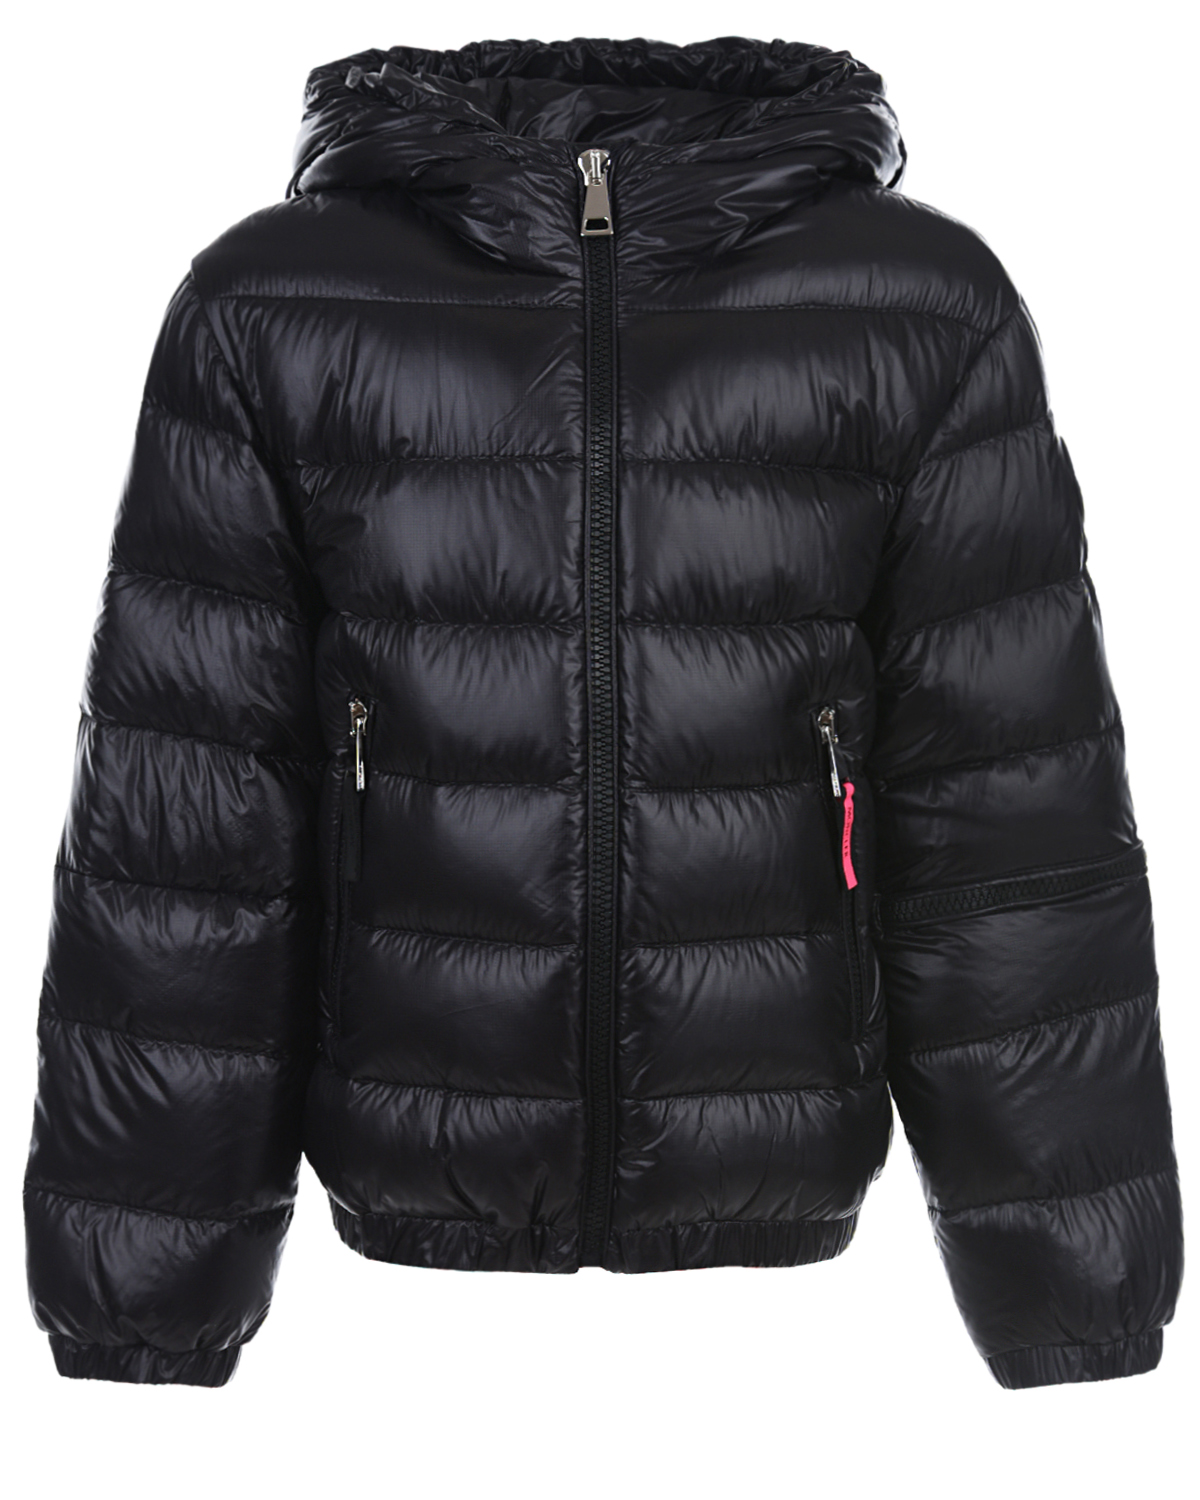 Купить Черная стеганая куртка с контрастной вставкой Moncler, Черный, 100%полиамид, 100%полиэстер, 90%пух+10%перо